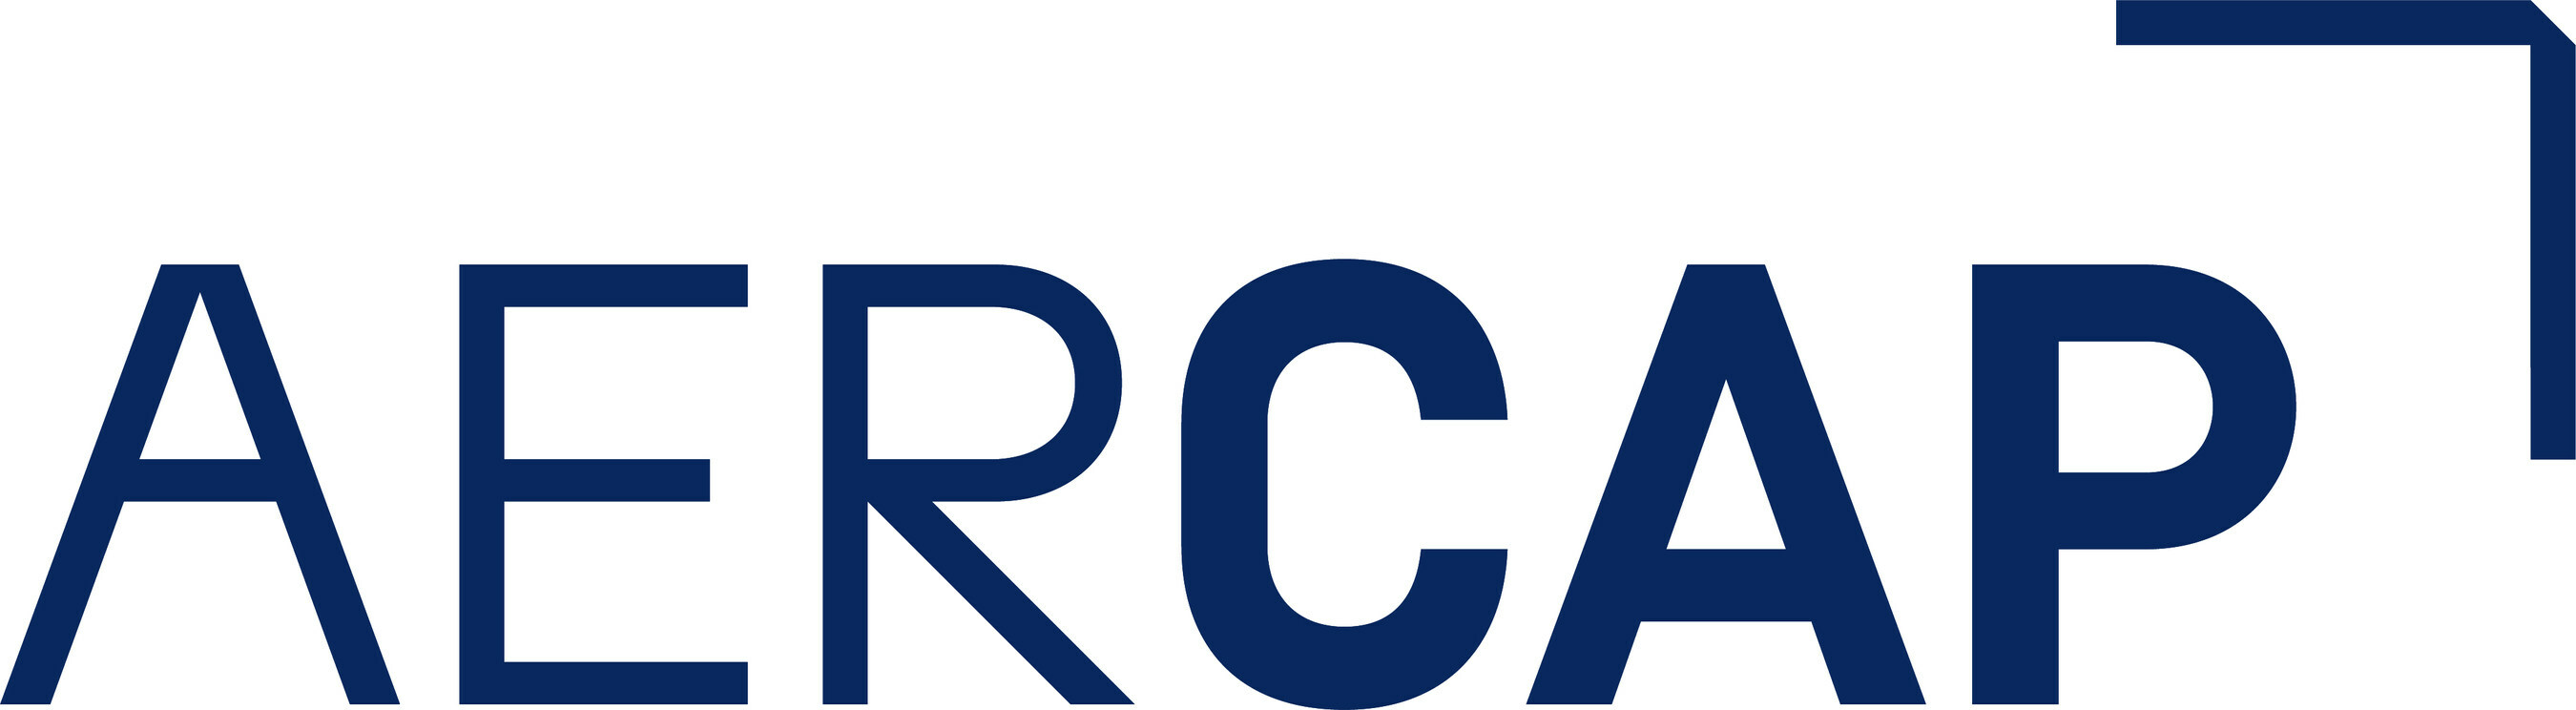 AerCap Holdings N.V.